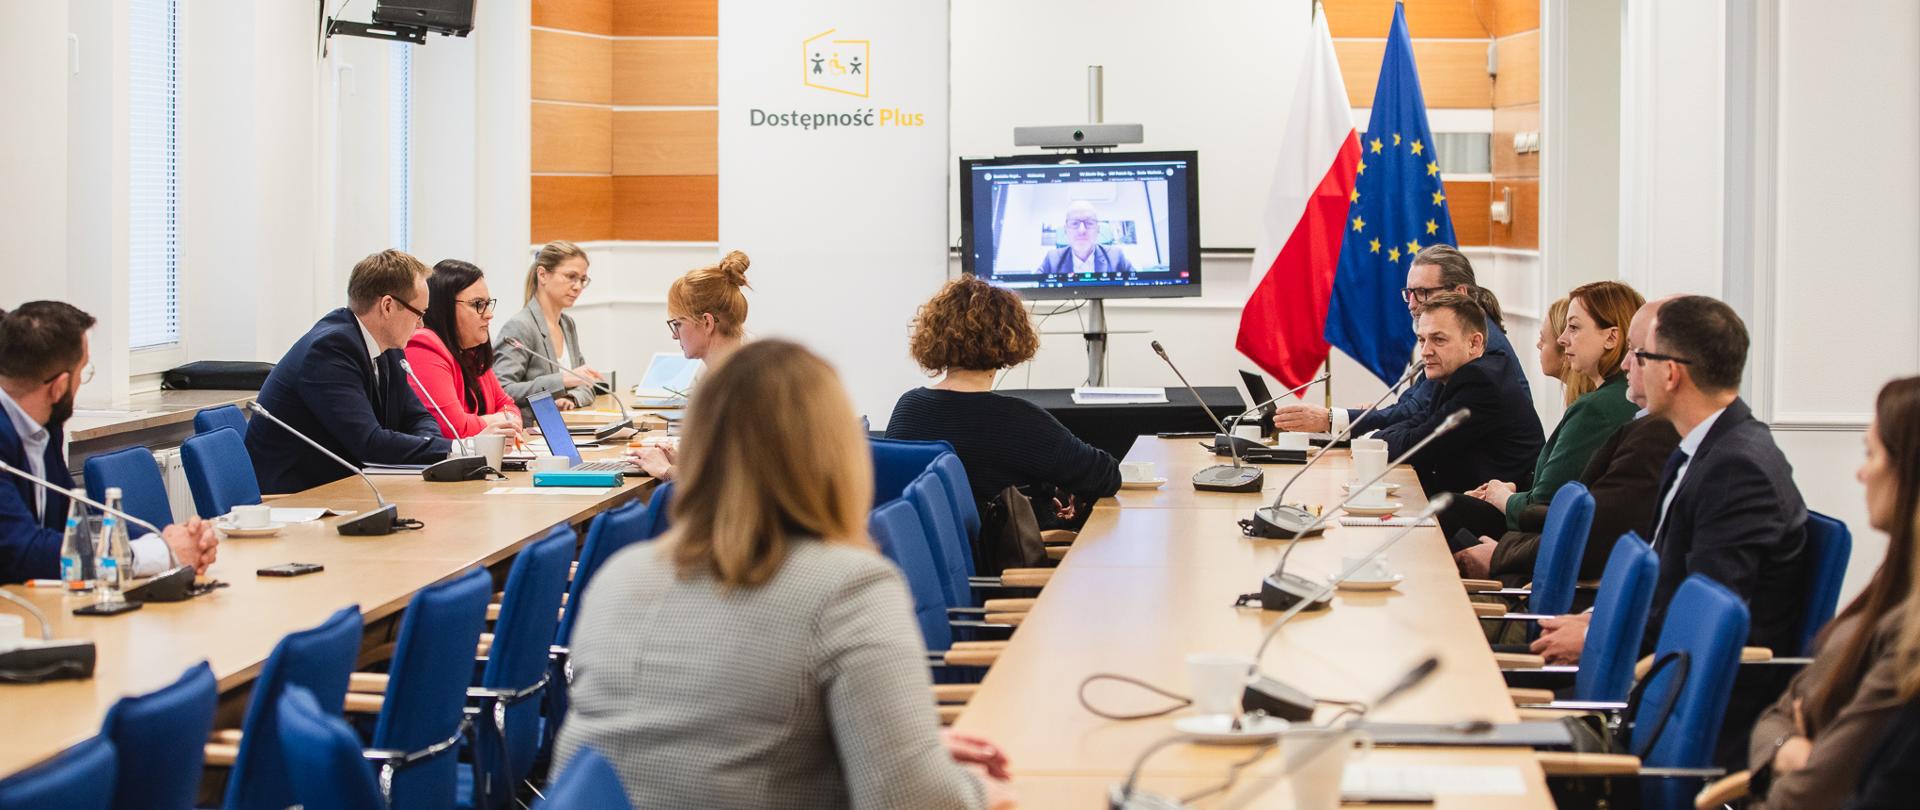 W sali przy stołach siedzą osoby. Przy ścianie monitor, flagi PL i UE i ścianka reklamowa z nadrukiem "Dostępność Plus".